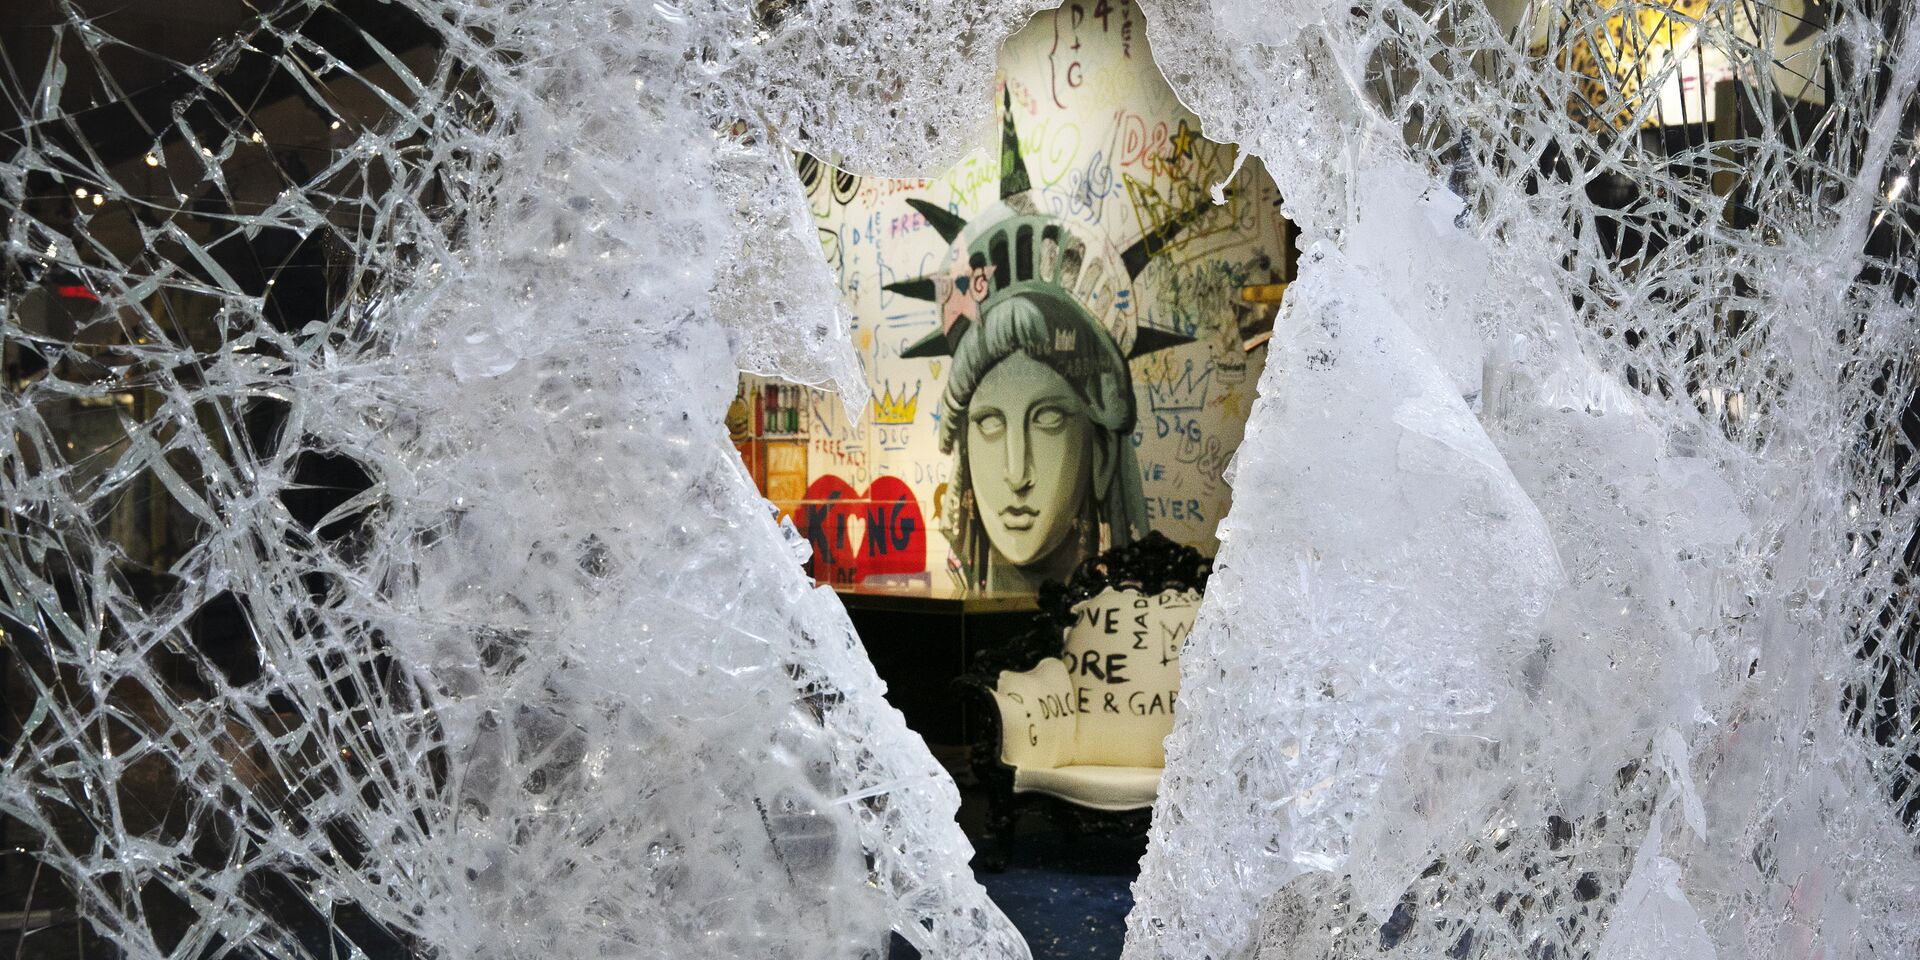 Граффити, изображающее лицо Статуи свободы, через разбитую витрину магазина в Нью-Йорке, США - ИноСМИ, 1920, 10.11.2020